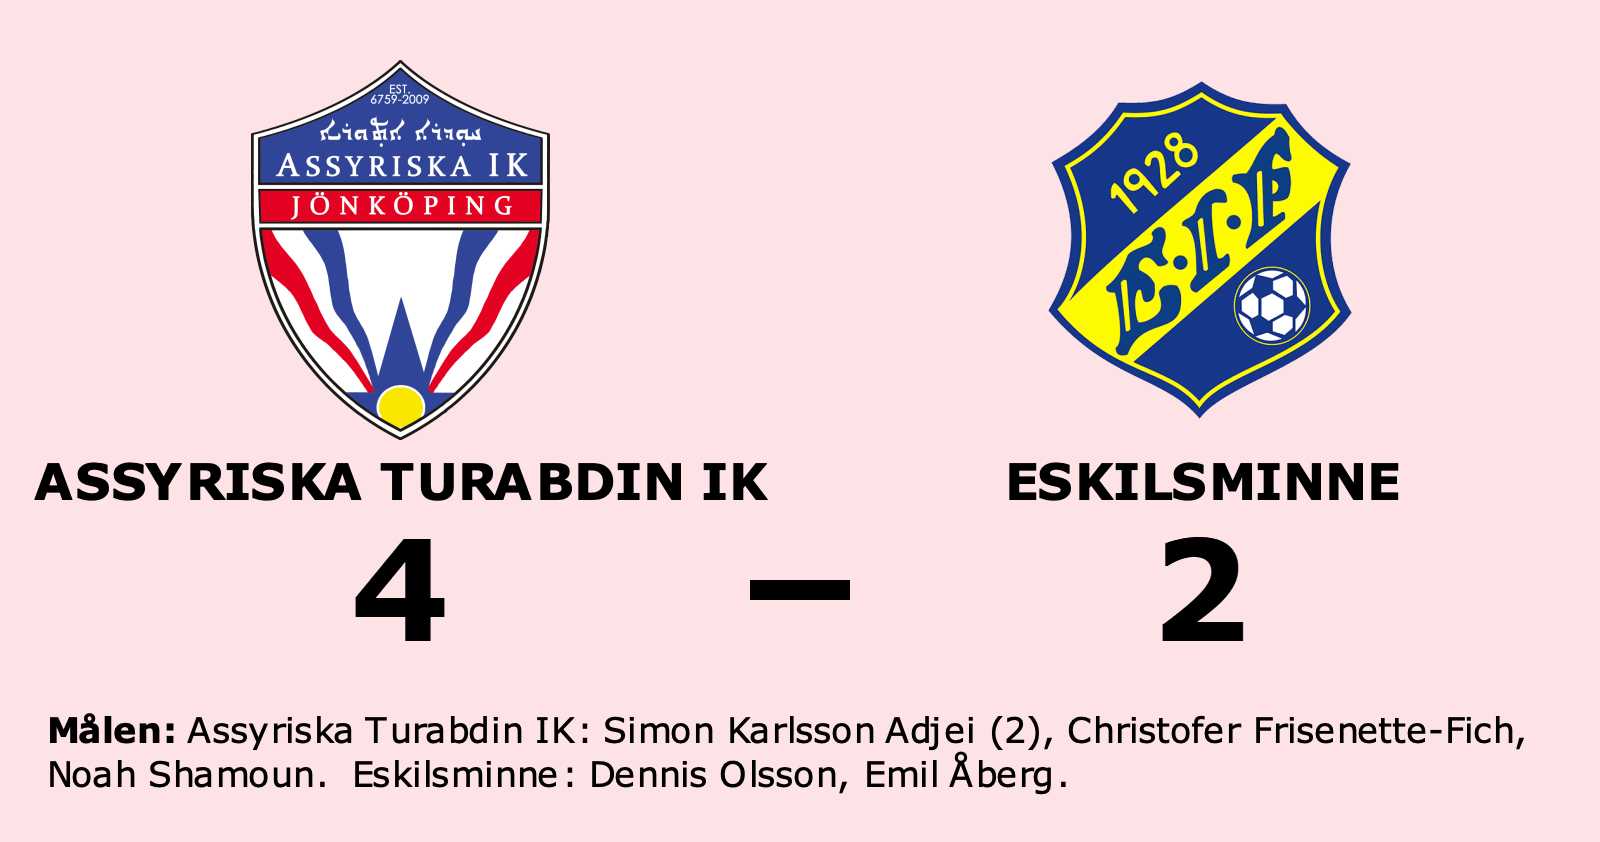 Dennis Olsson och Emil Åberg målskyttar när Eskilsminne förlorade